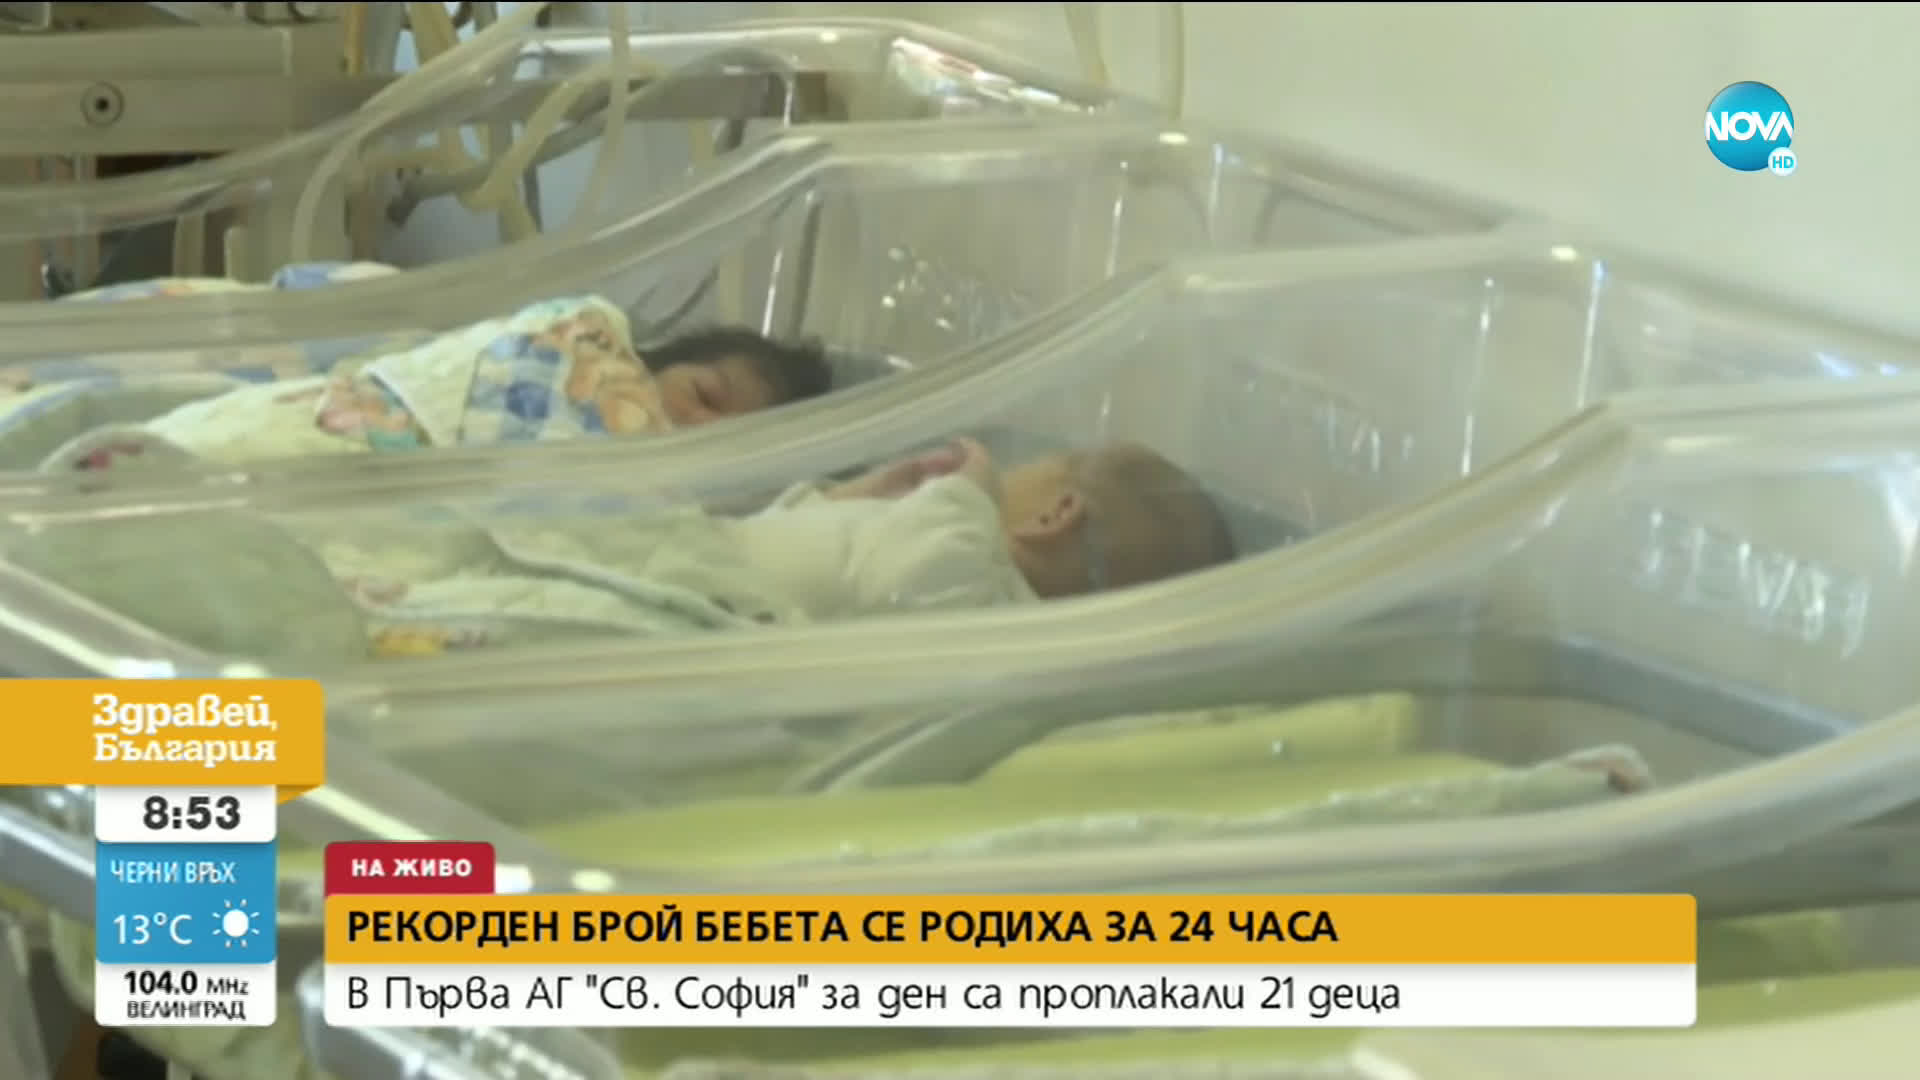 Рекорден брой бебета се родиха в столична болница само за ден